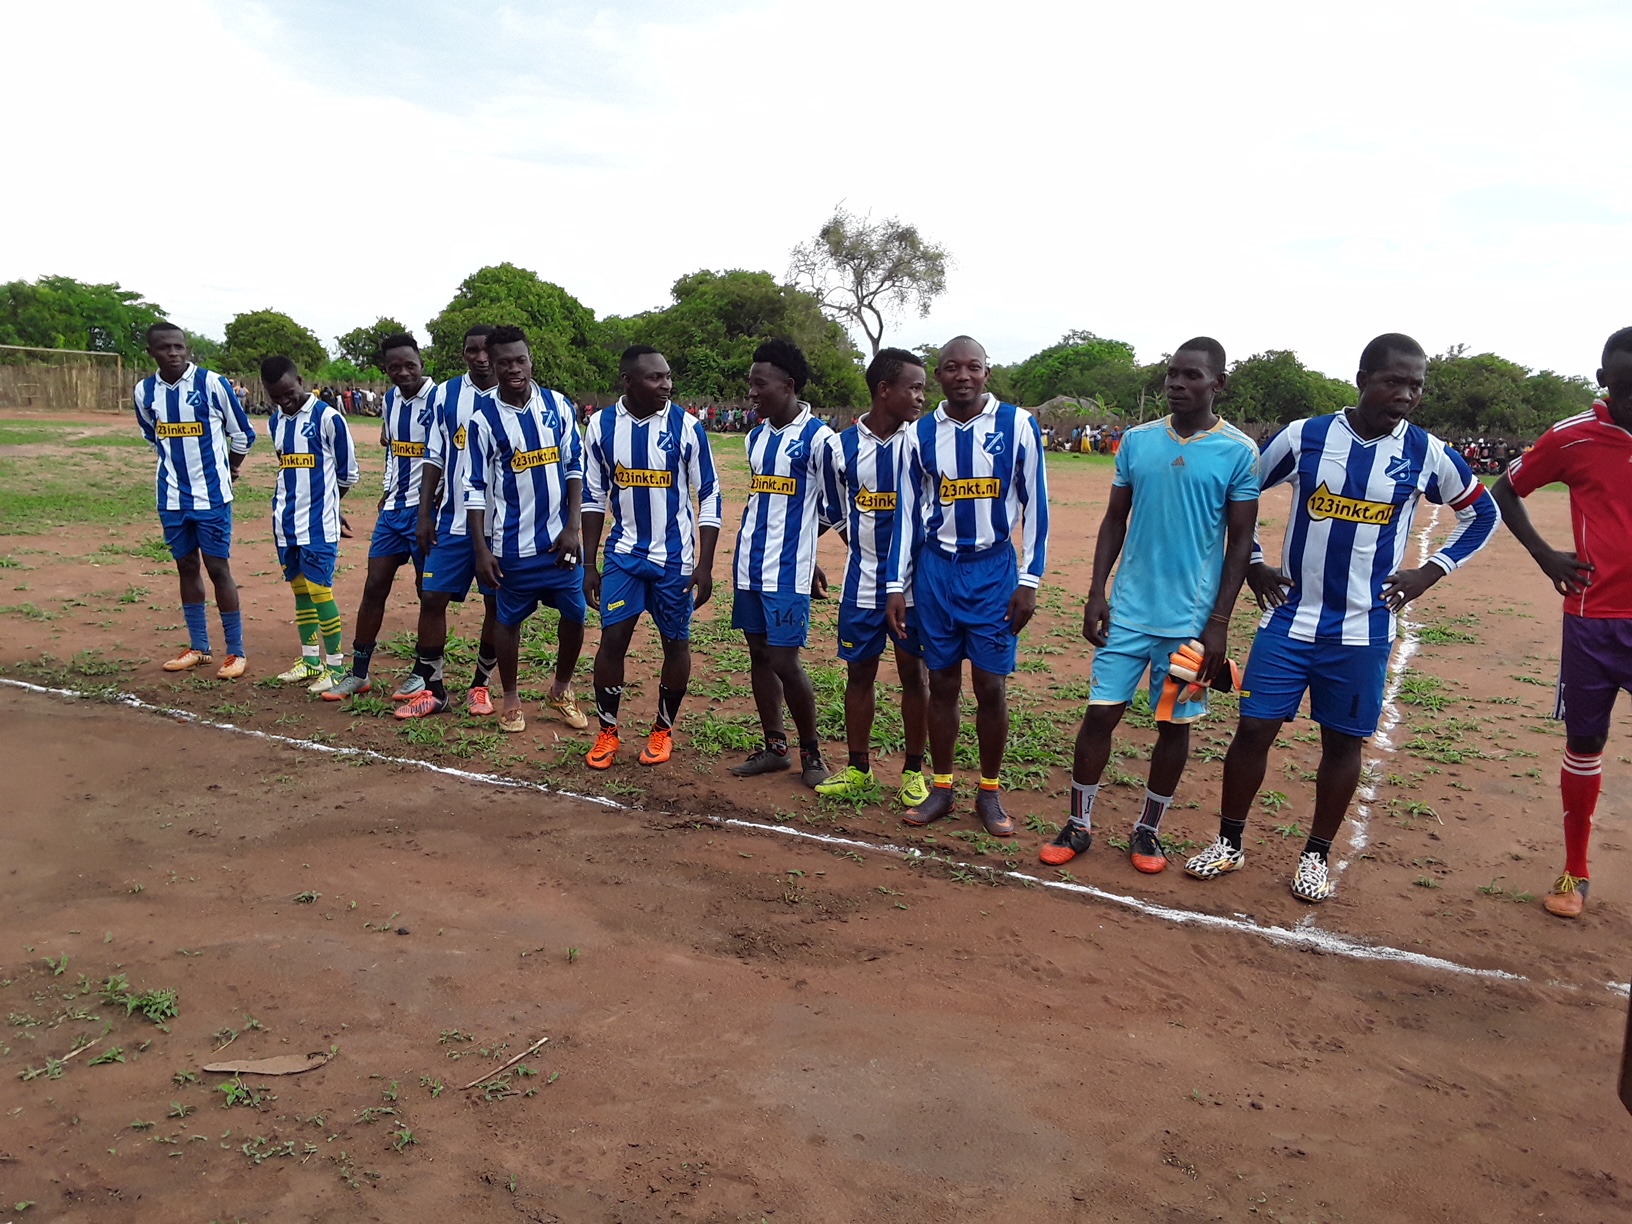 Voetbalshirts Angerlo Vooruit krijgen tweede leven in Tanzania